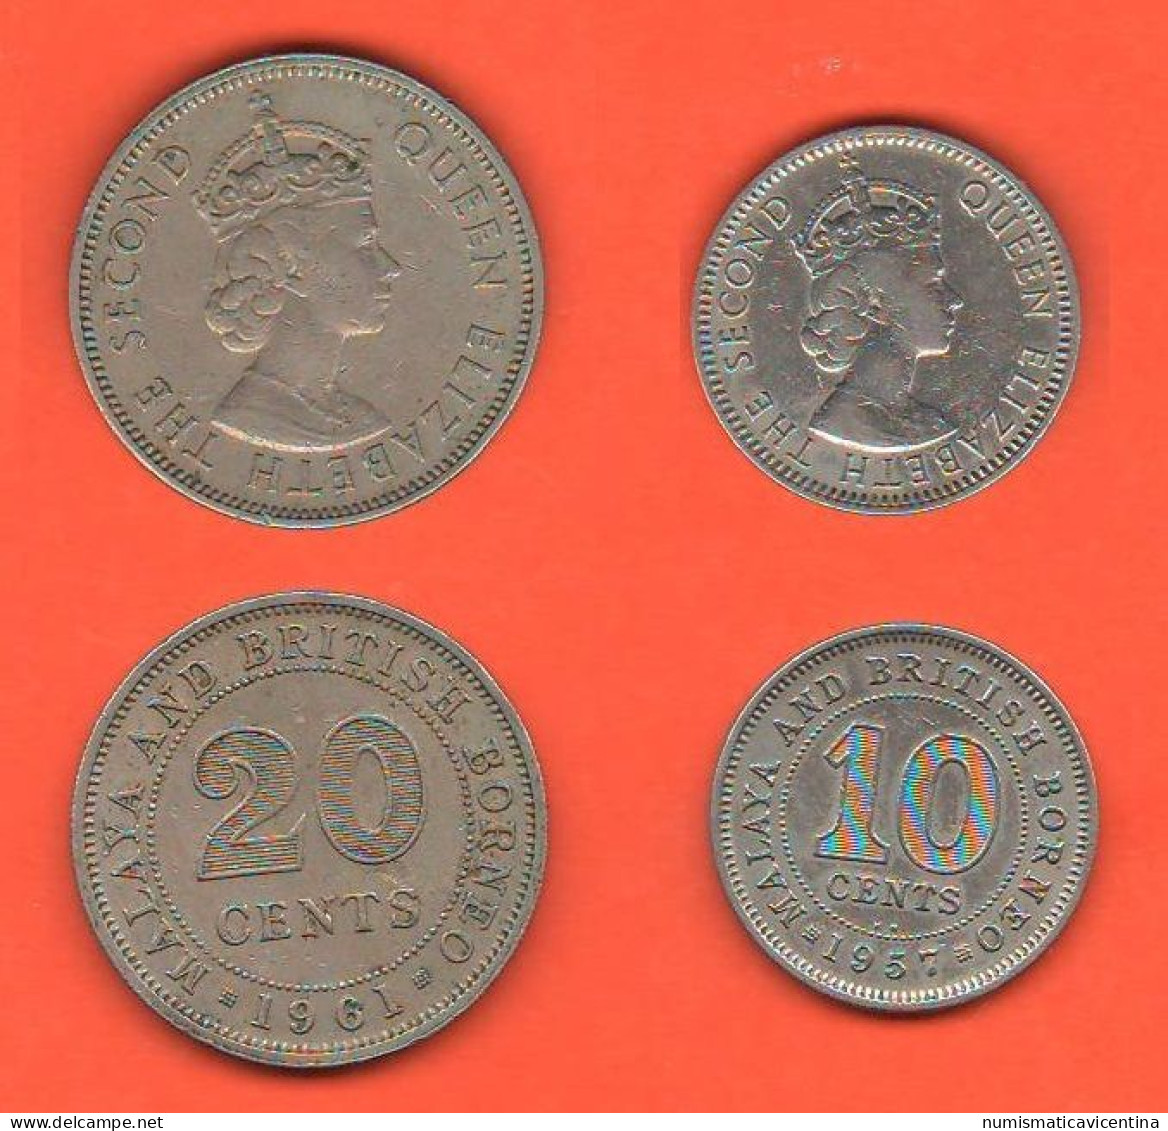 British Borneo 10 + 20 Cents 1957 E 1961 Borneo Britannico 10 + 20 Centesimi Nickel Coin Malesia Malaysia   C 7 - Colonies